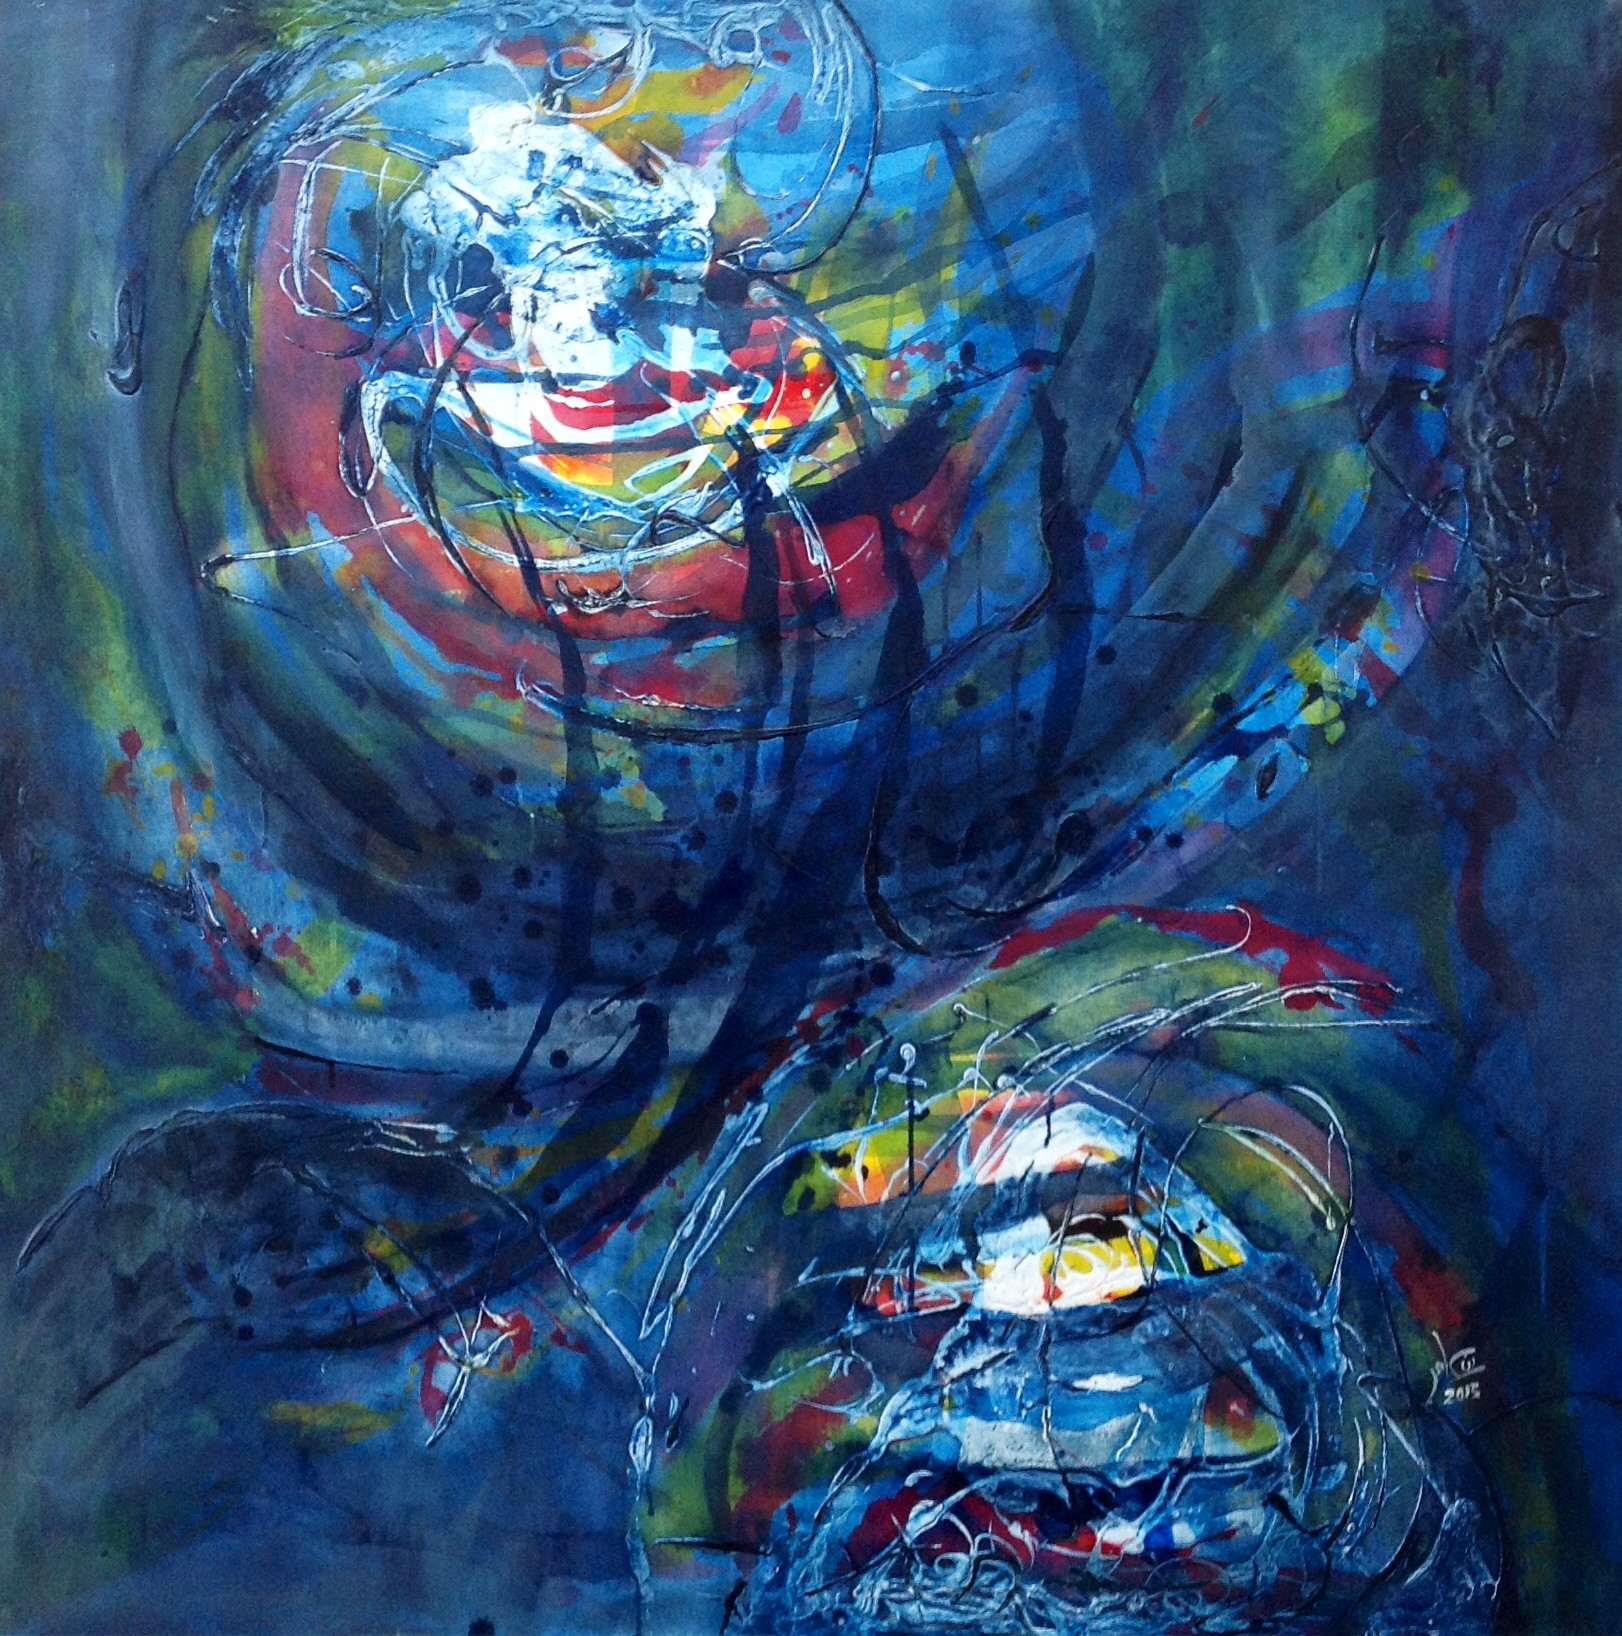 Cyclone. Acrylique sur toile. 110 x 110 cm. 2015